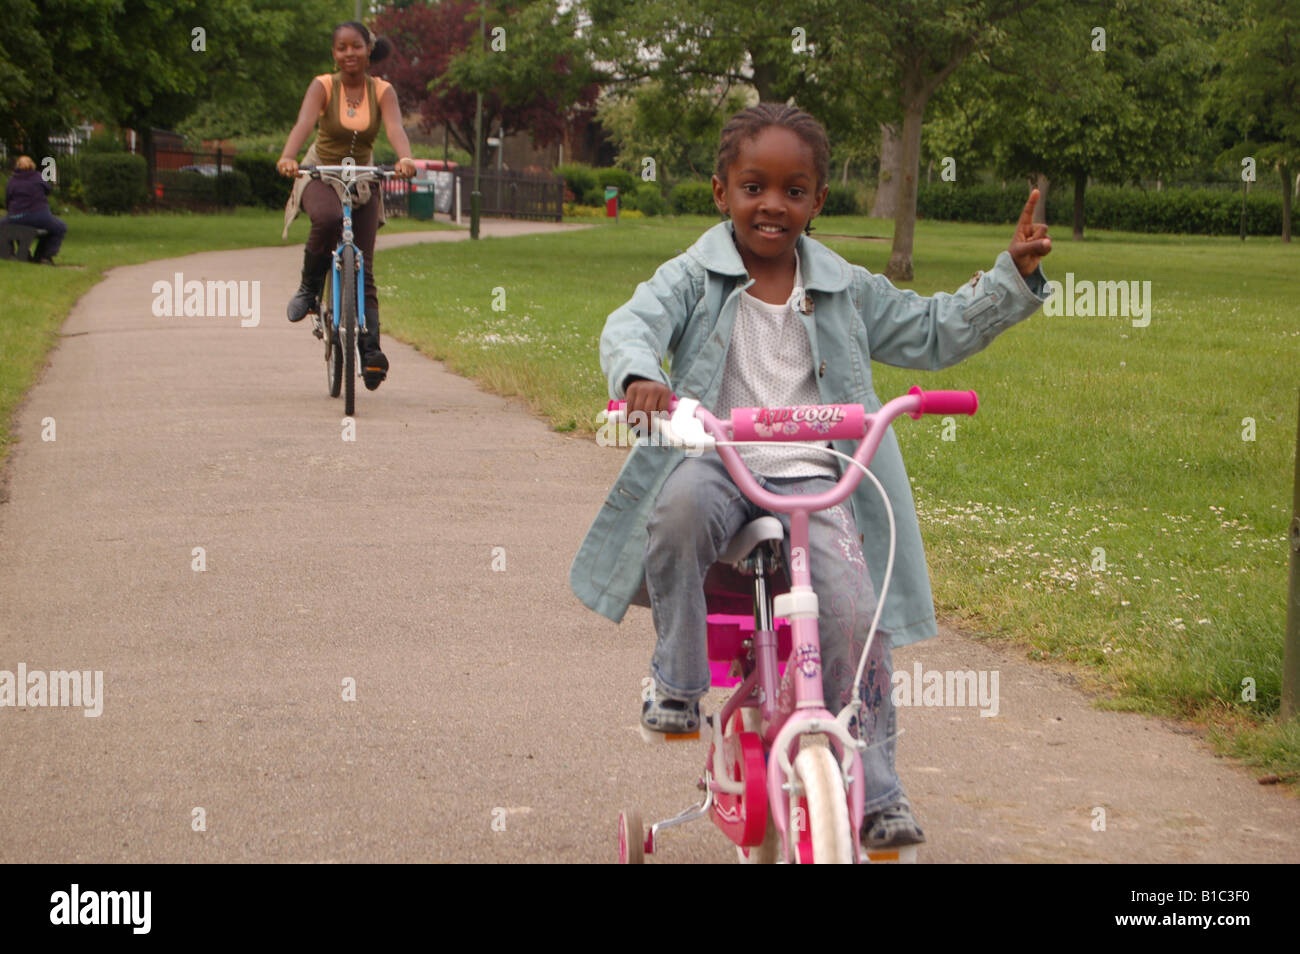 Les enfants afro-caraïbes riding bikes in park Banque D'Images